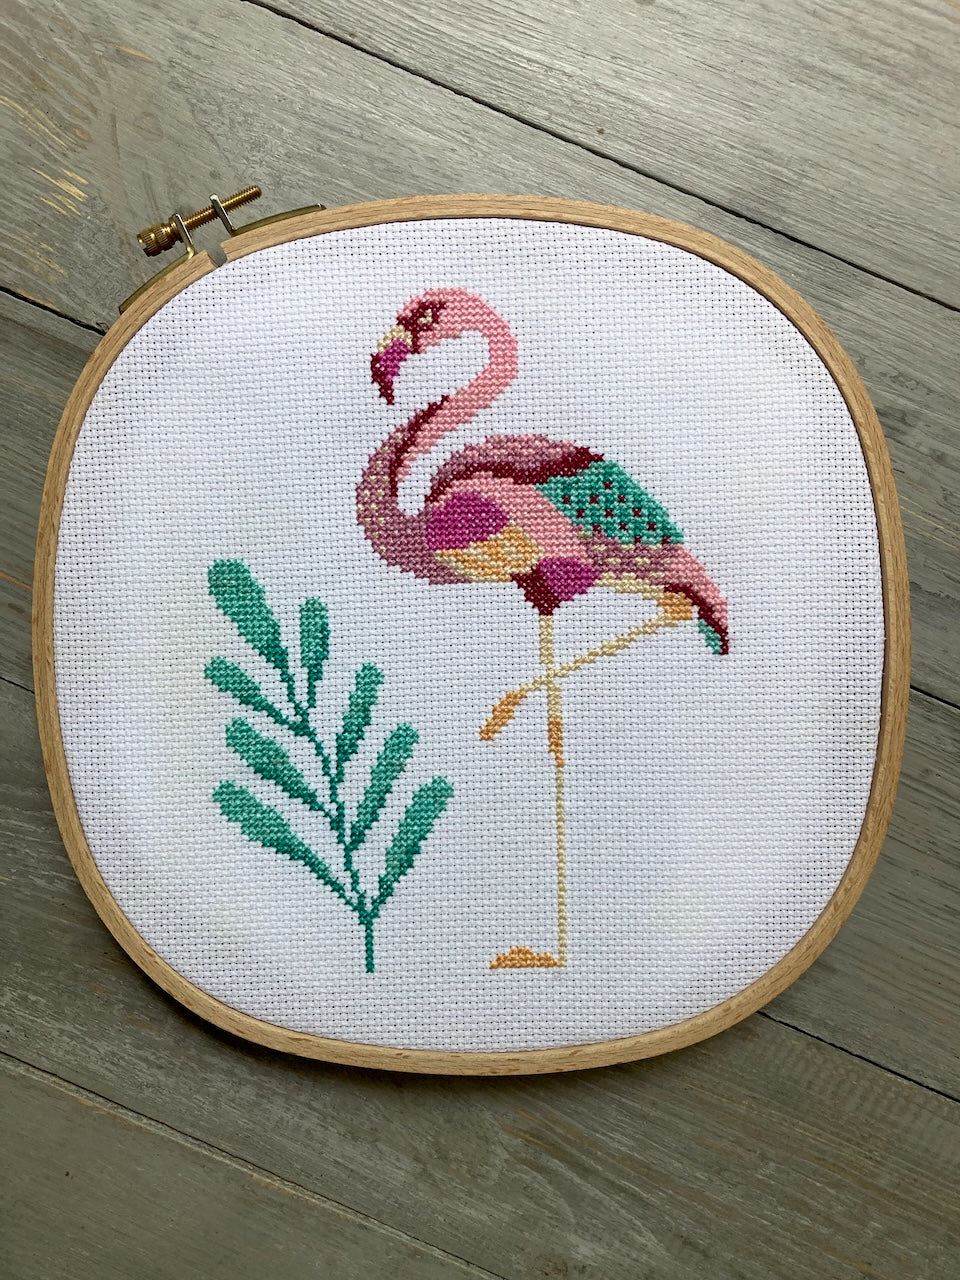 Flamingo - cross stitch pattern